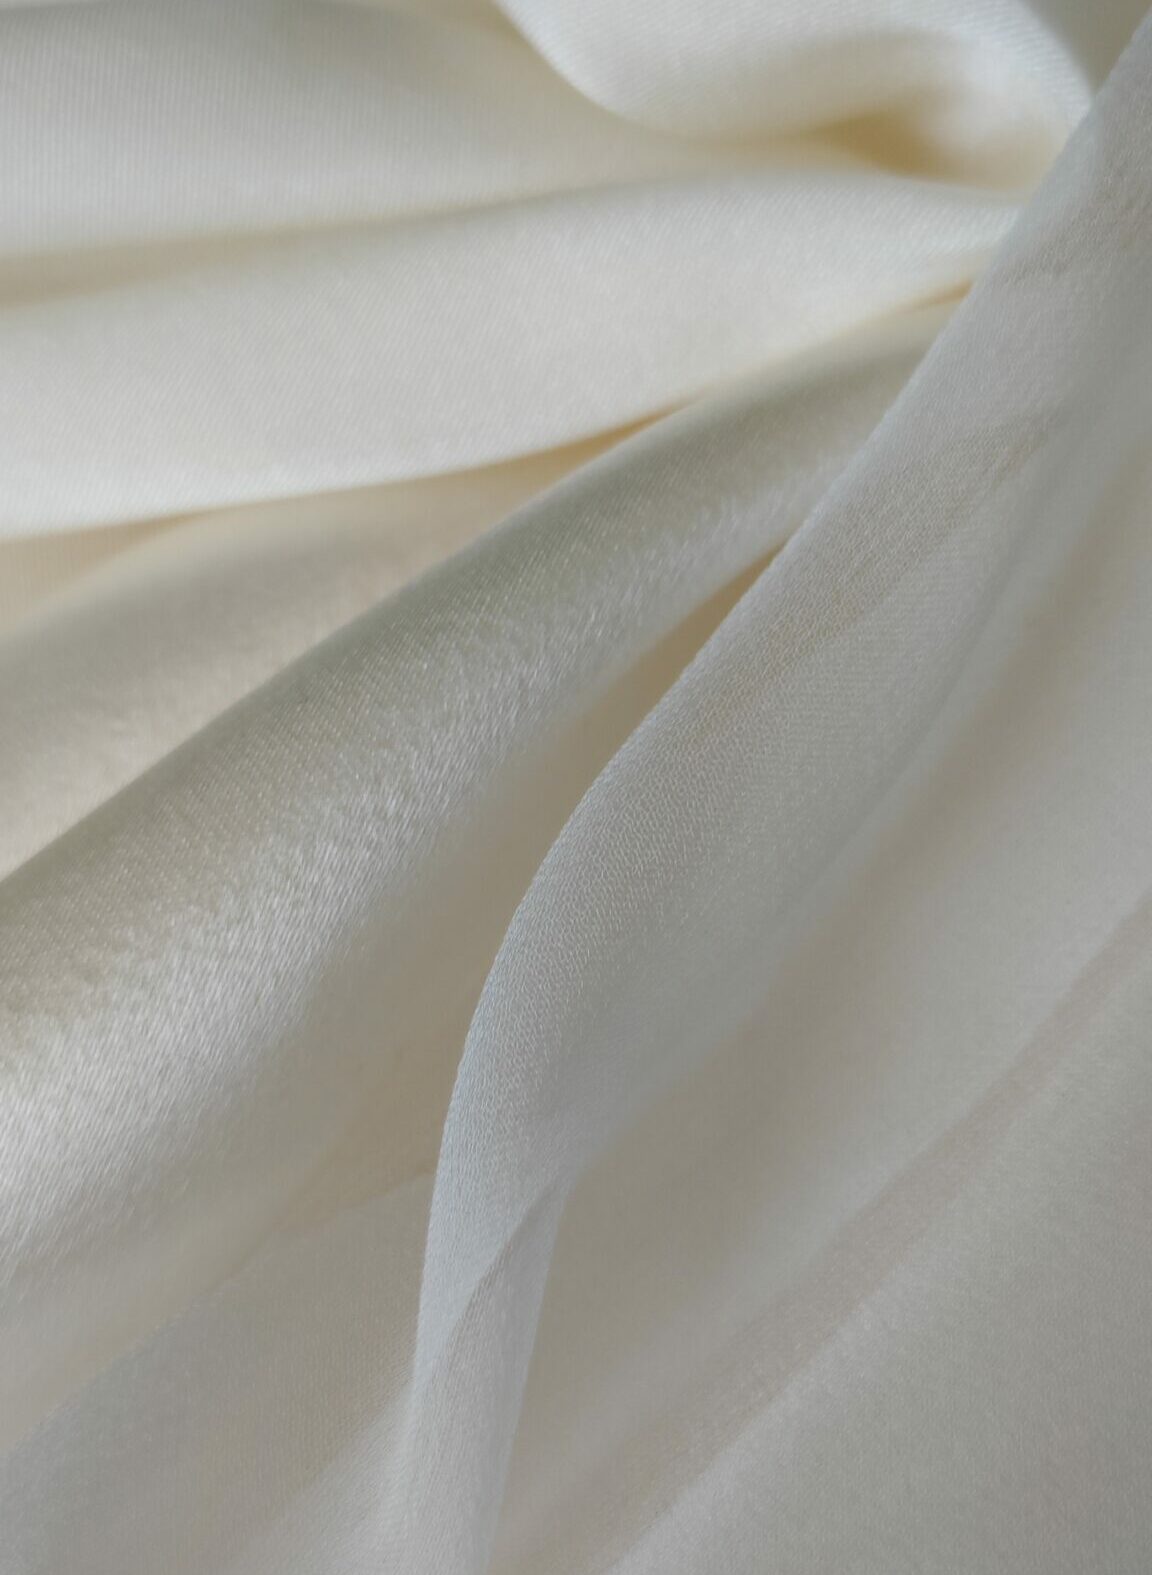 Assortiment de soies 100% naturelles pour robe de mariée. Crêpe, mousseline, satin. Photo création Alyss Signature